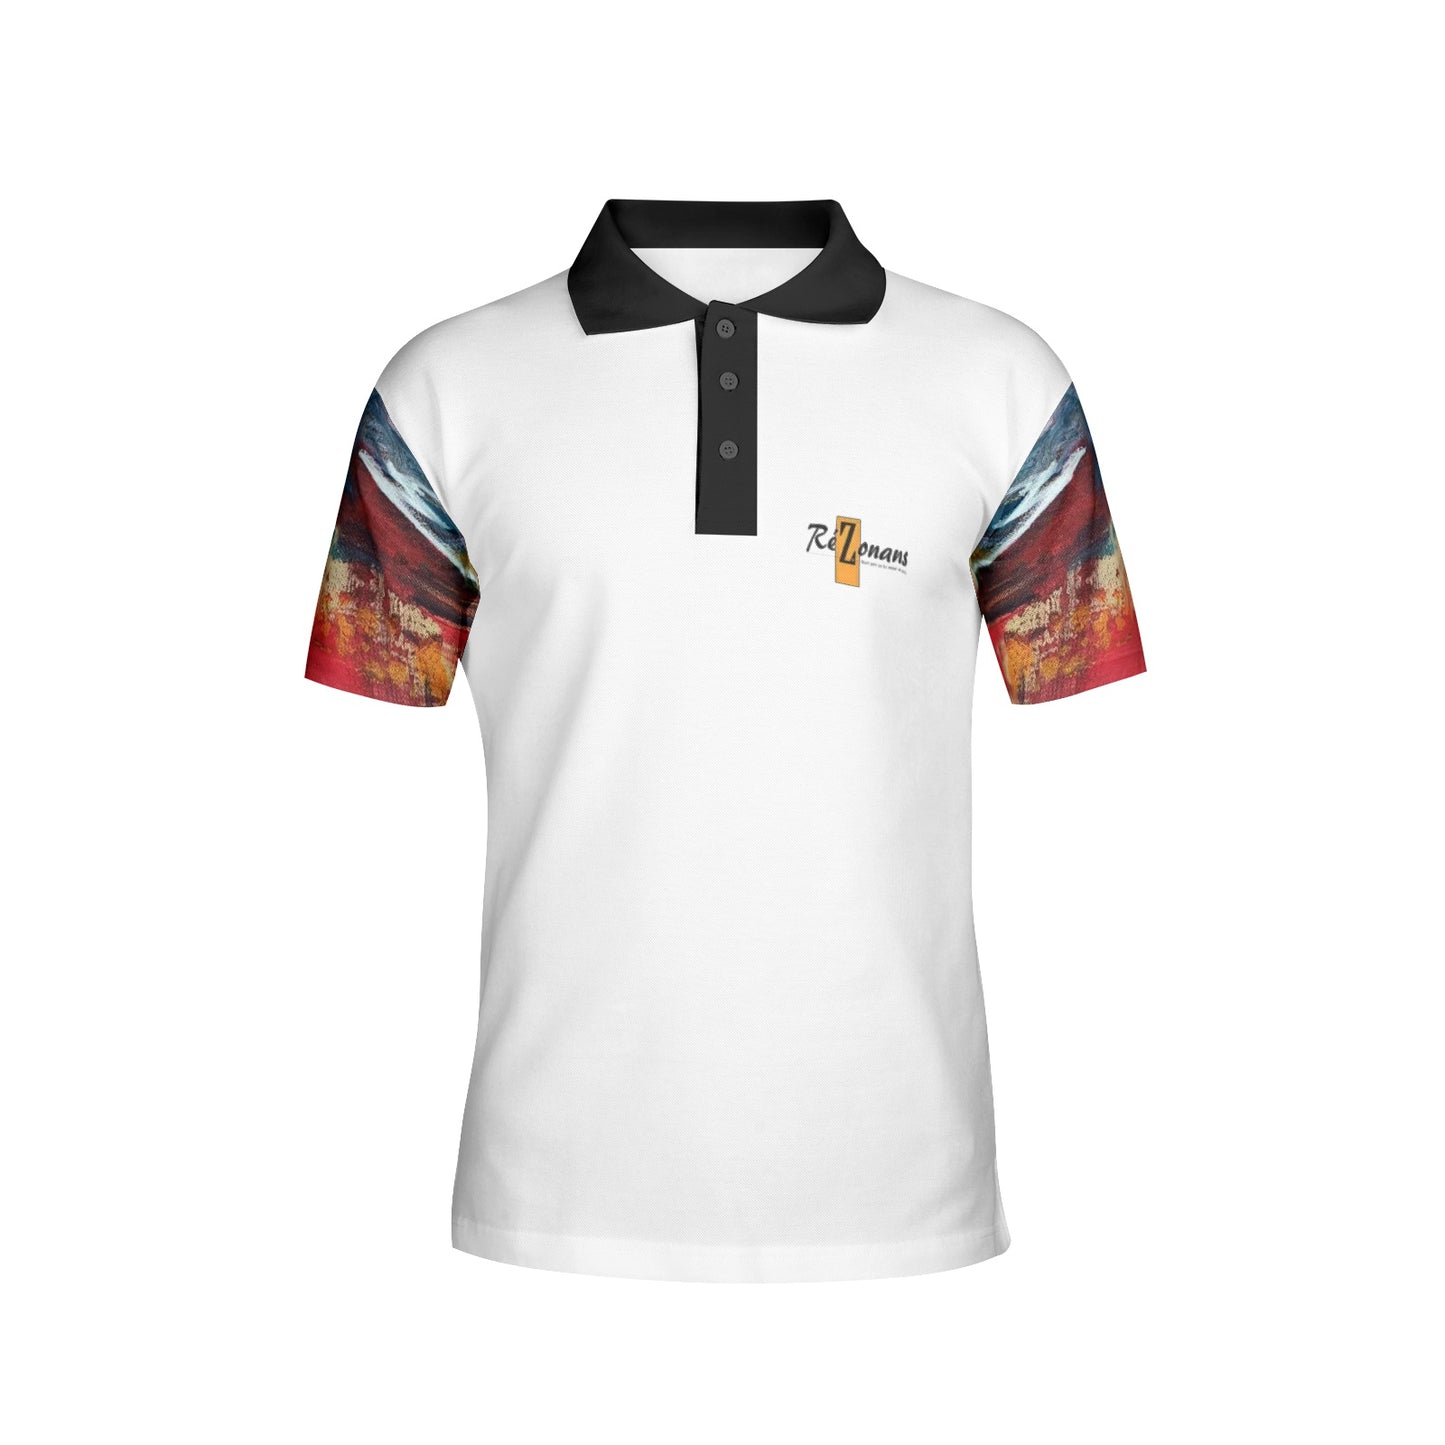 "Lapaix" collector's polo shirt